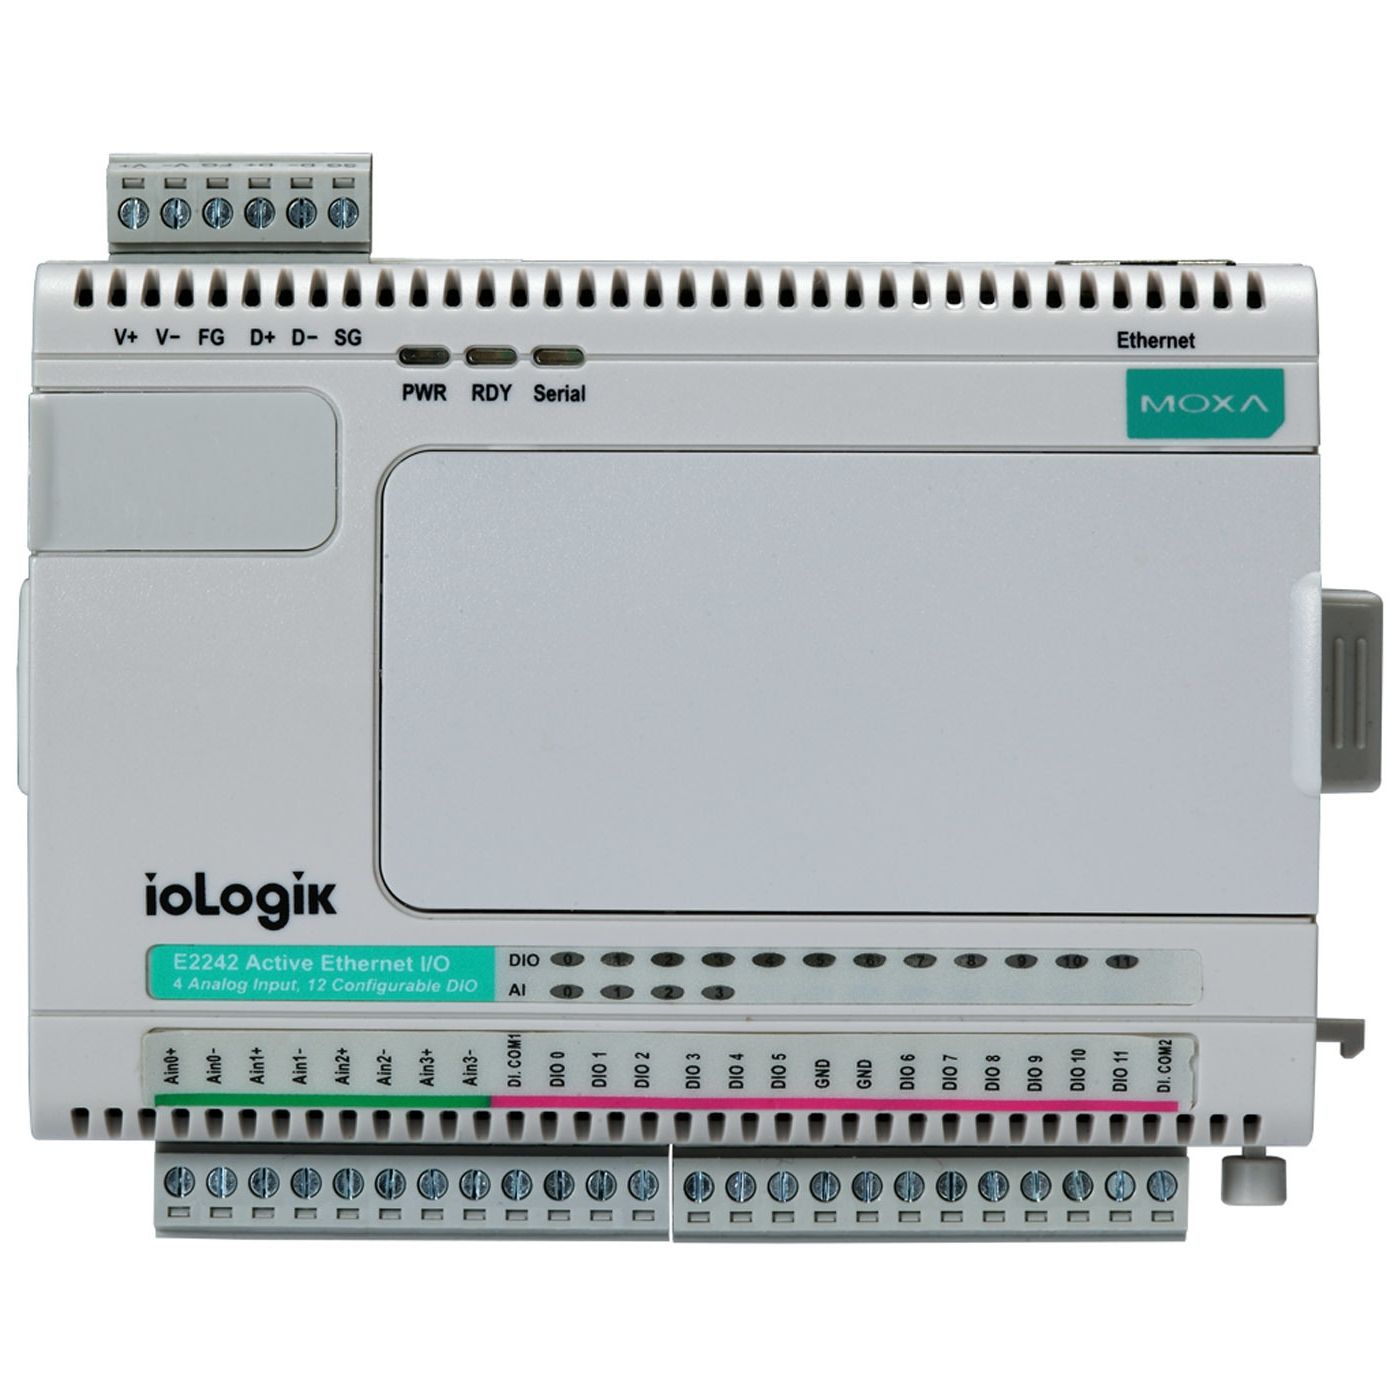 ioLogik E2210